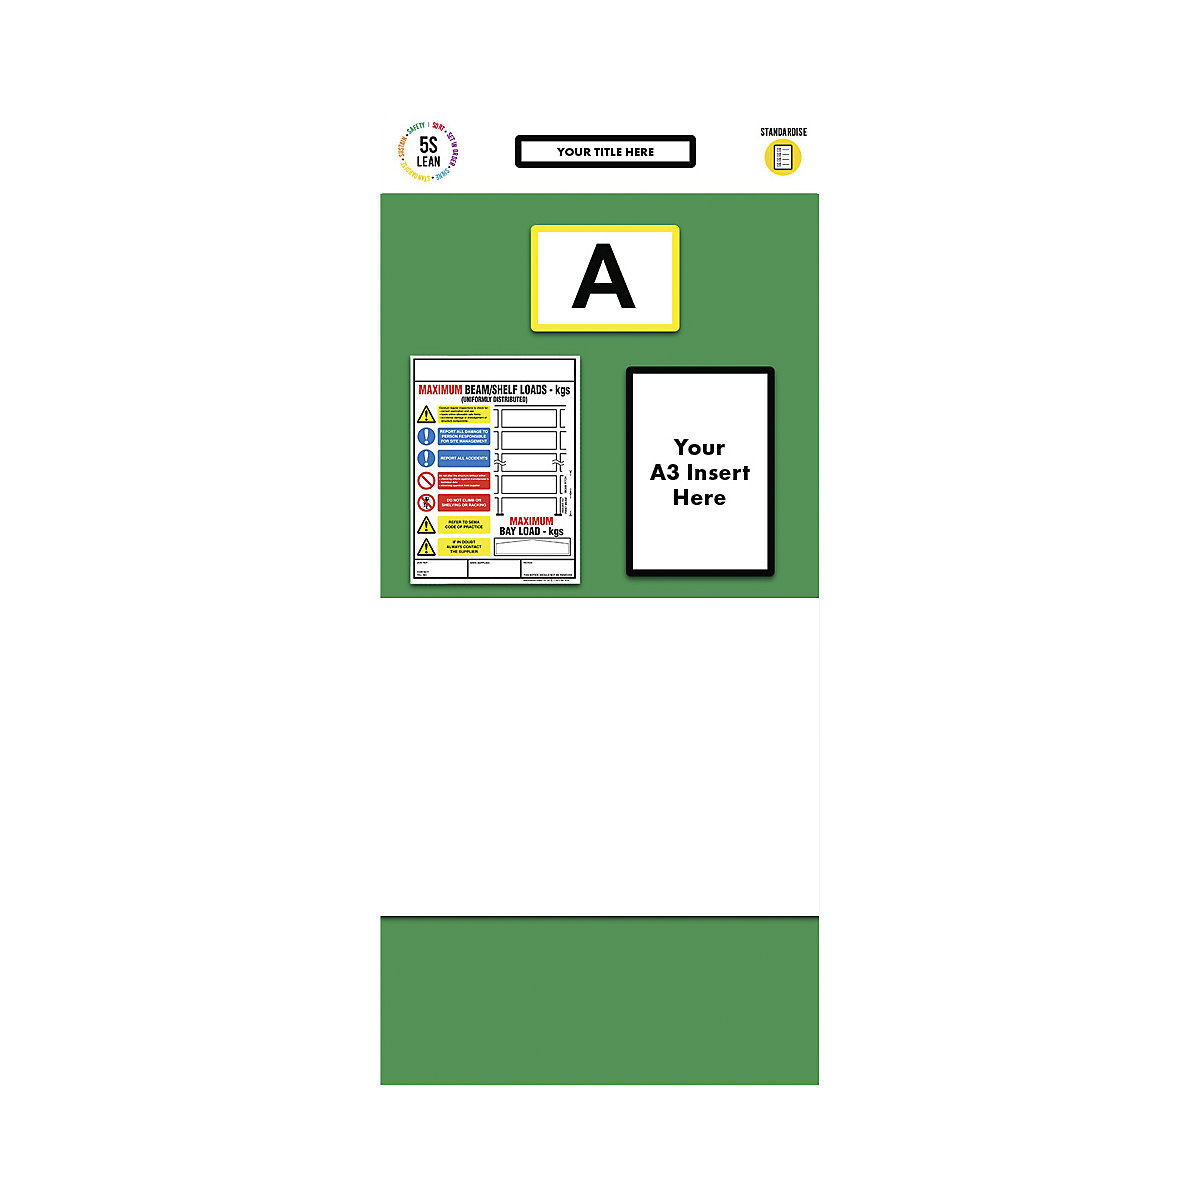 Informacijska ploča s policama s pojedinačnim označavanjem